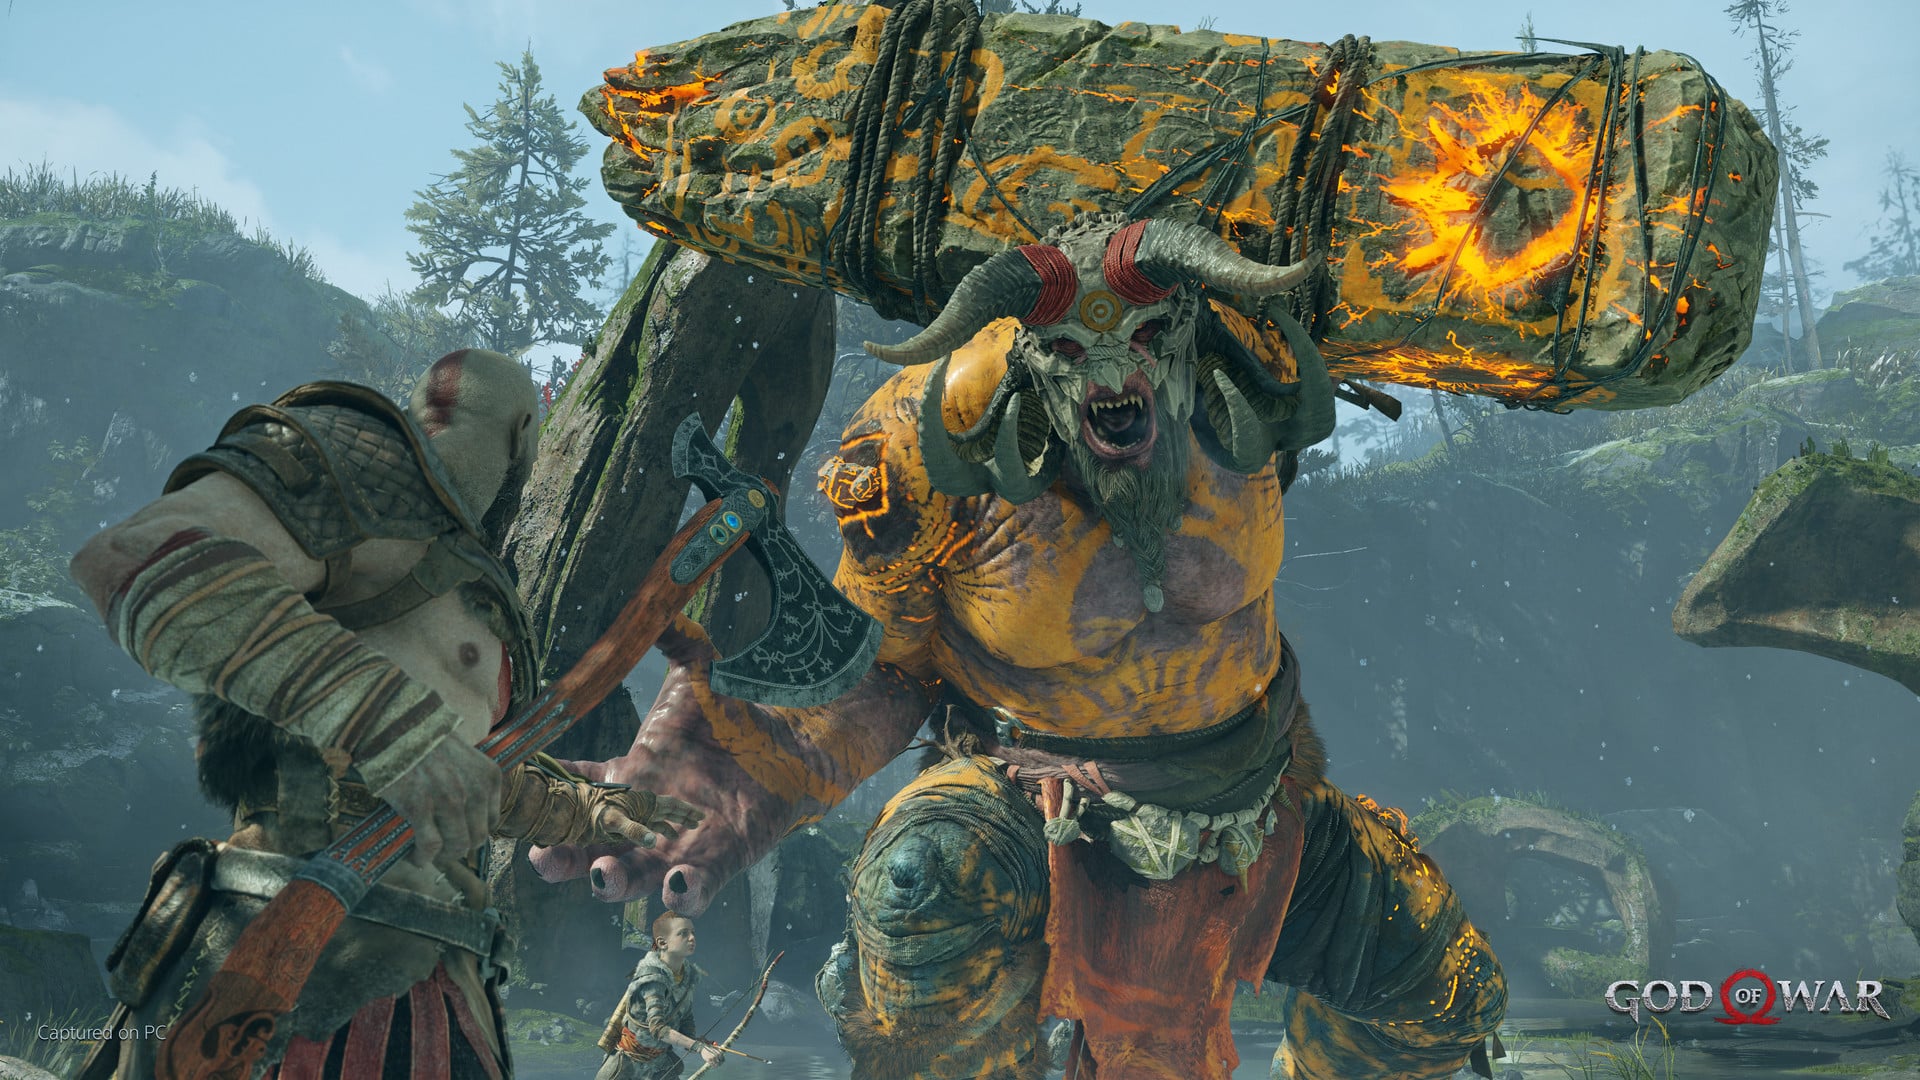 God of War PC review: A pillar of its era, a masterpiece arrives